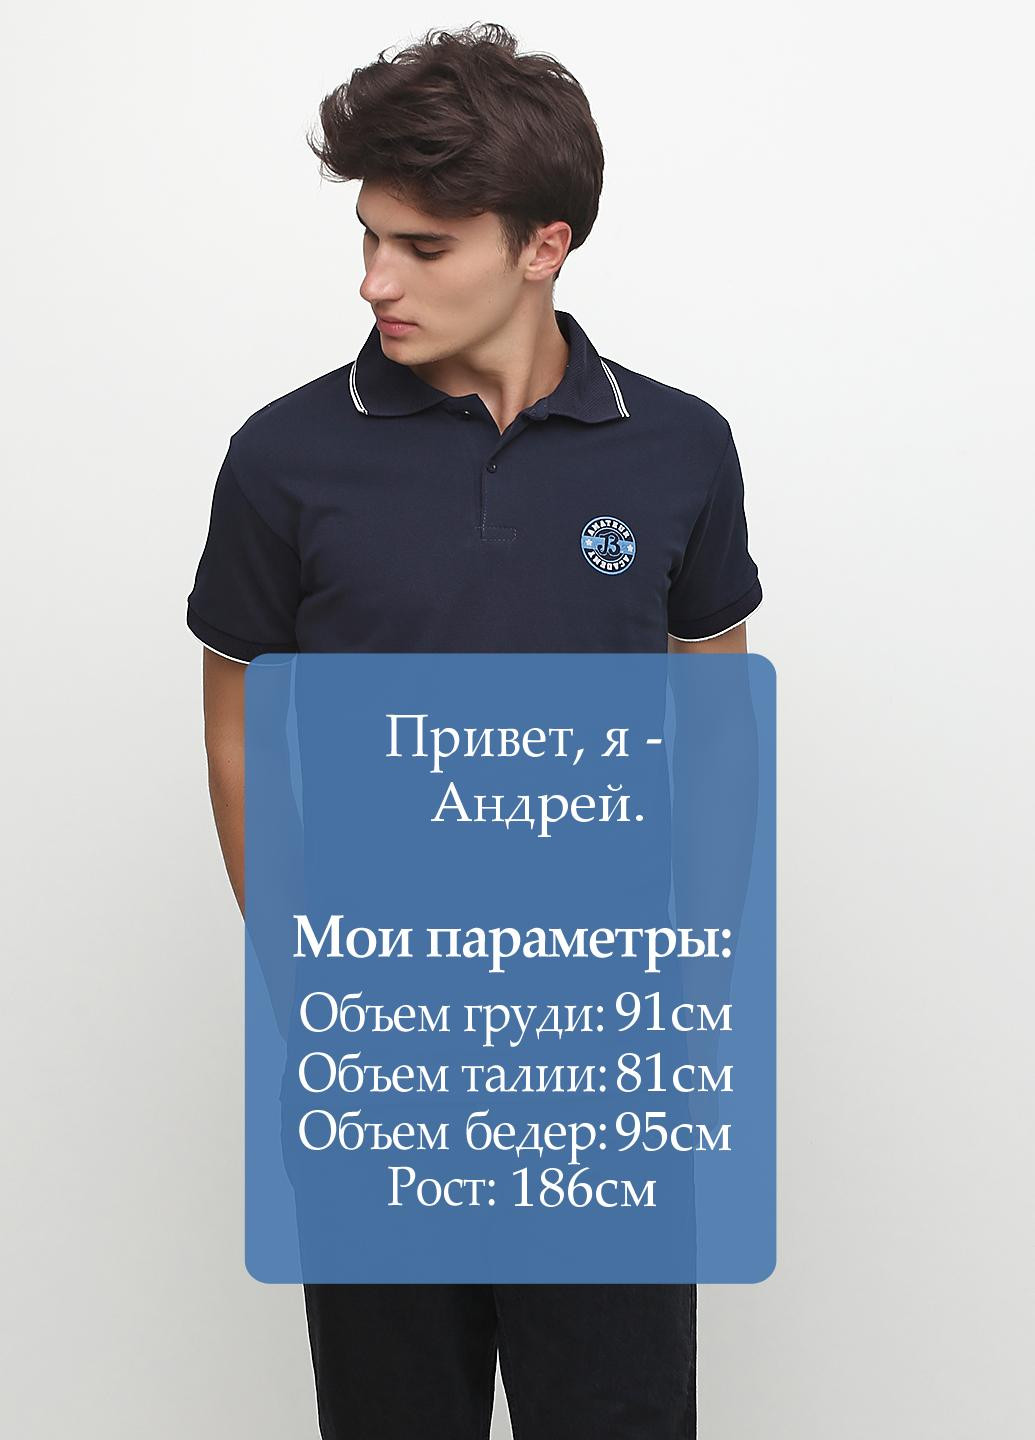 Темно-синяя футболка-поло для мужчин Chiarotex